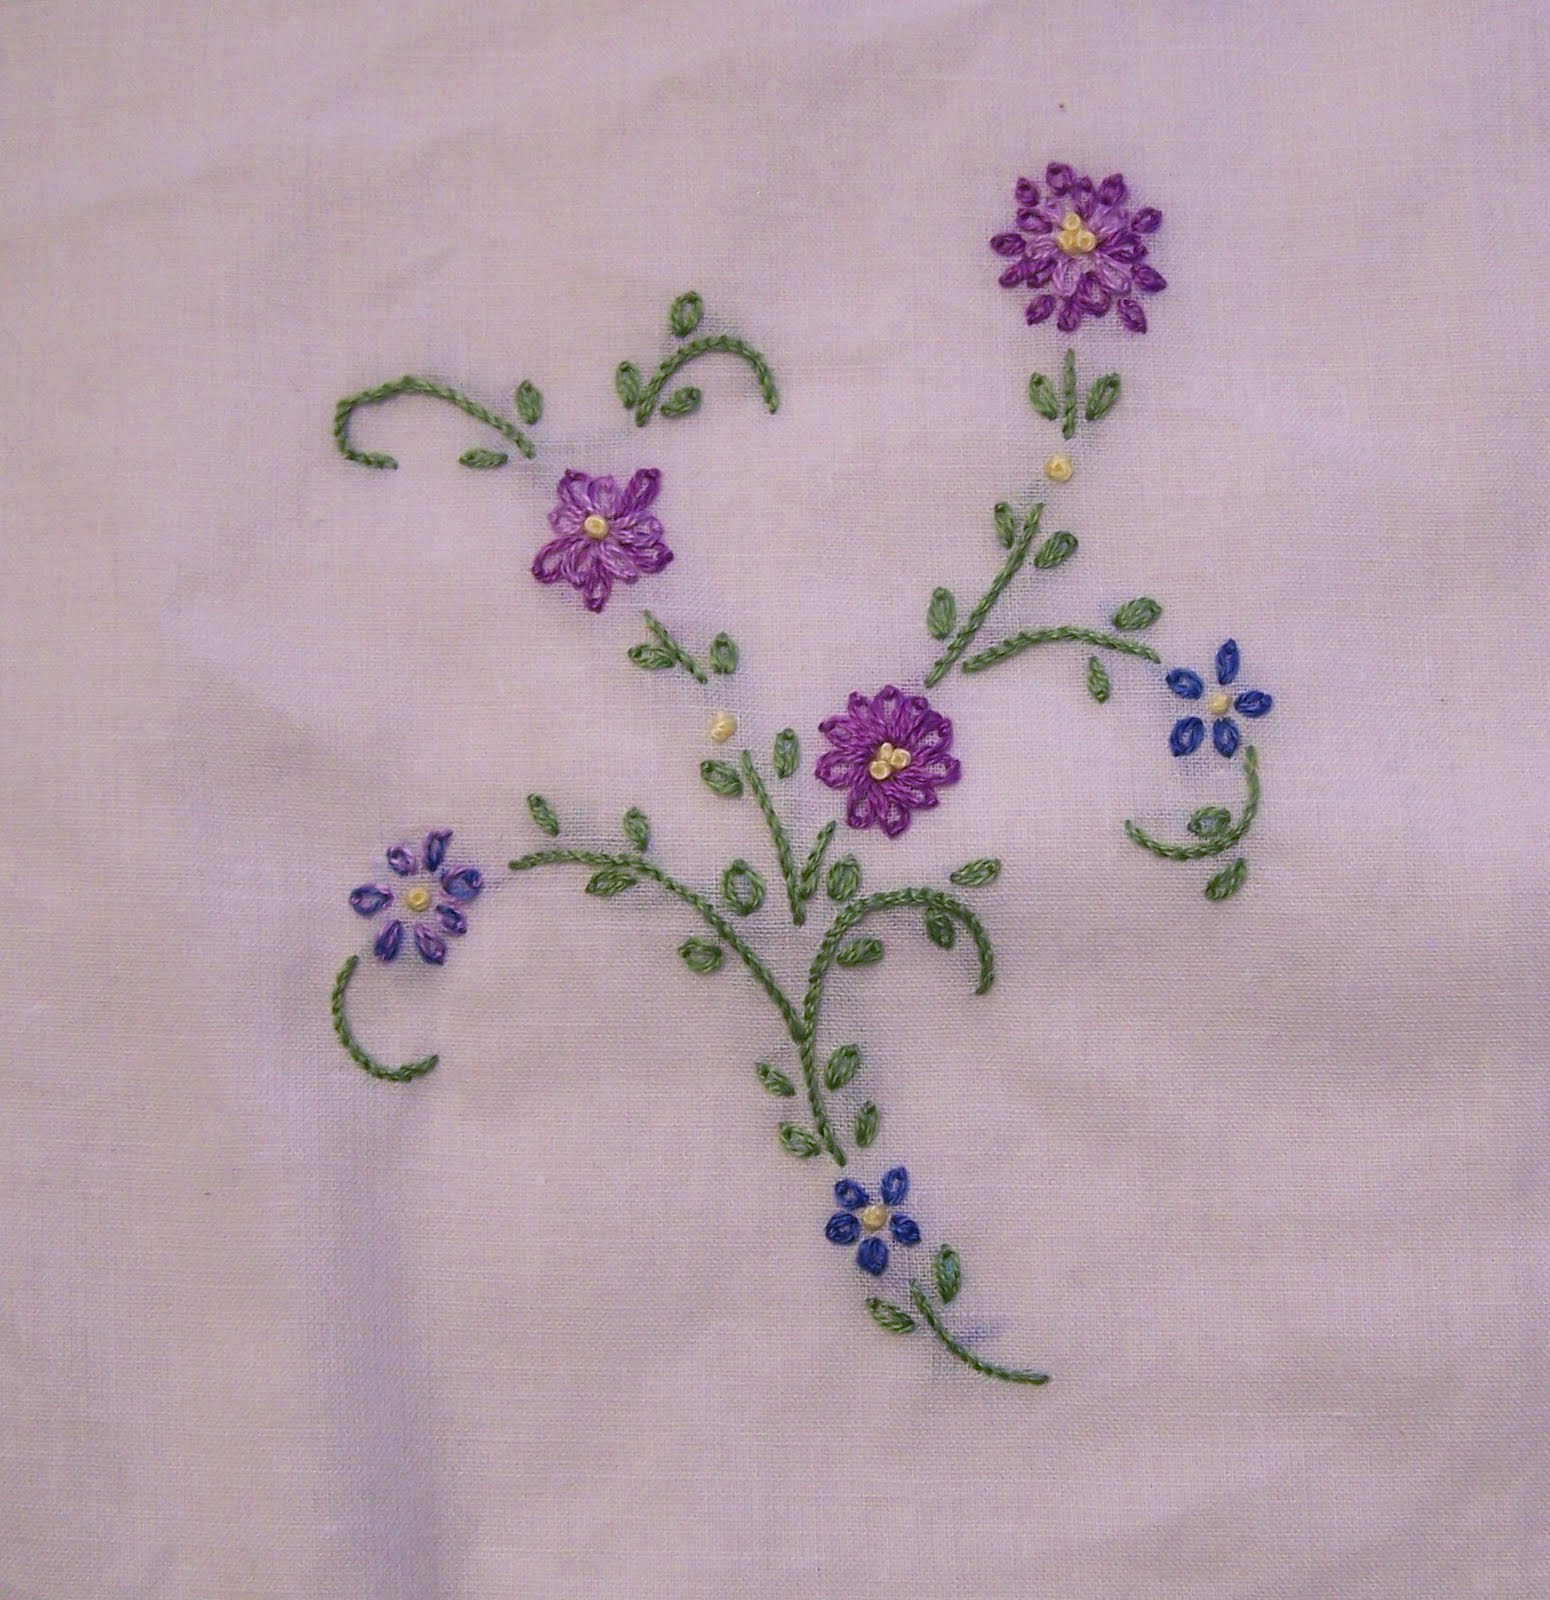 machine embroidery stitches | Free Cross Stitch Patterns